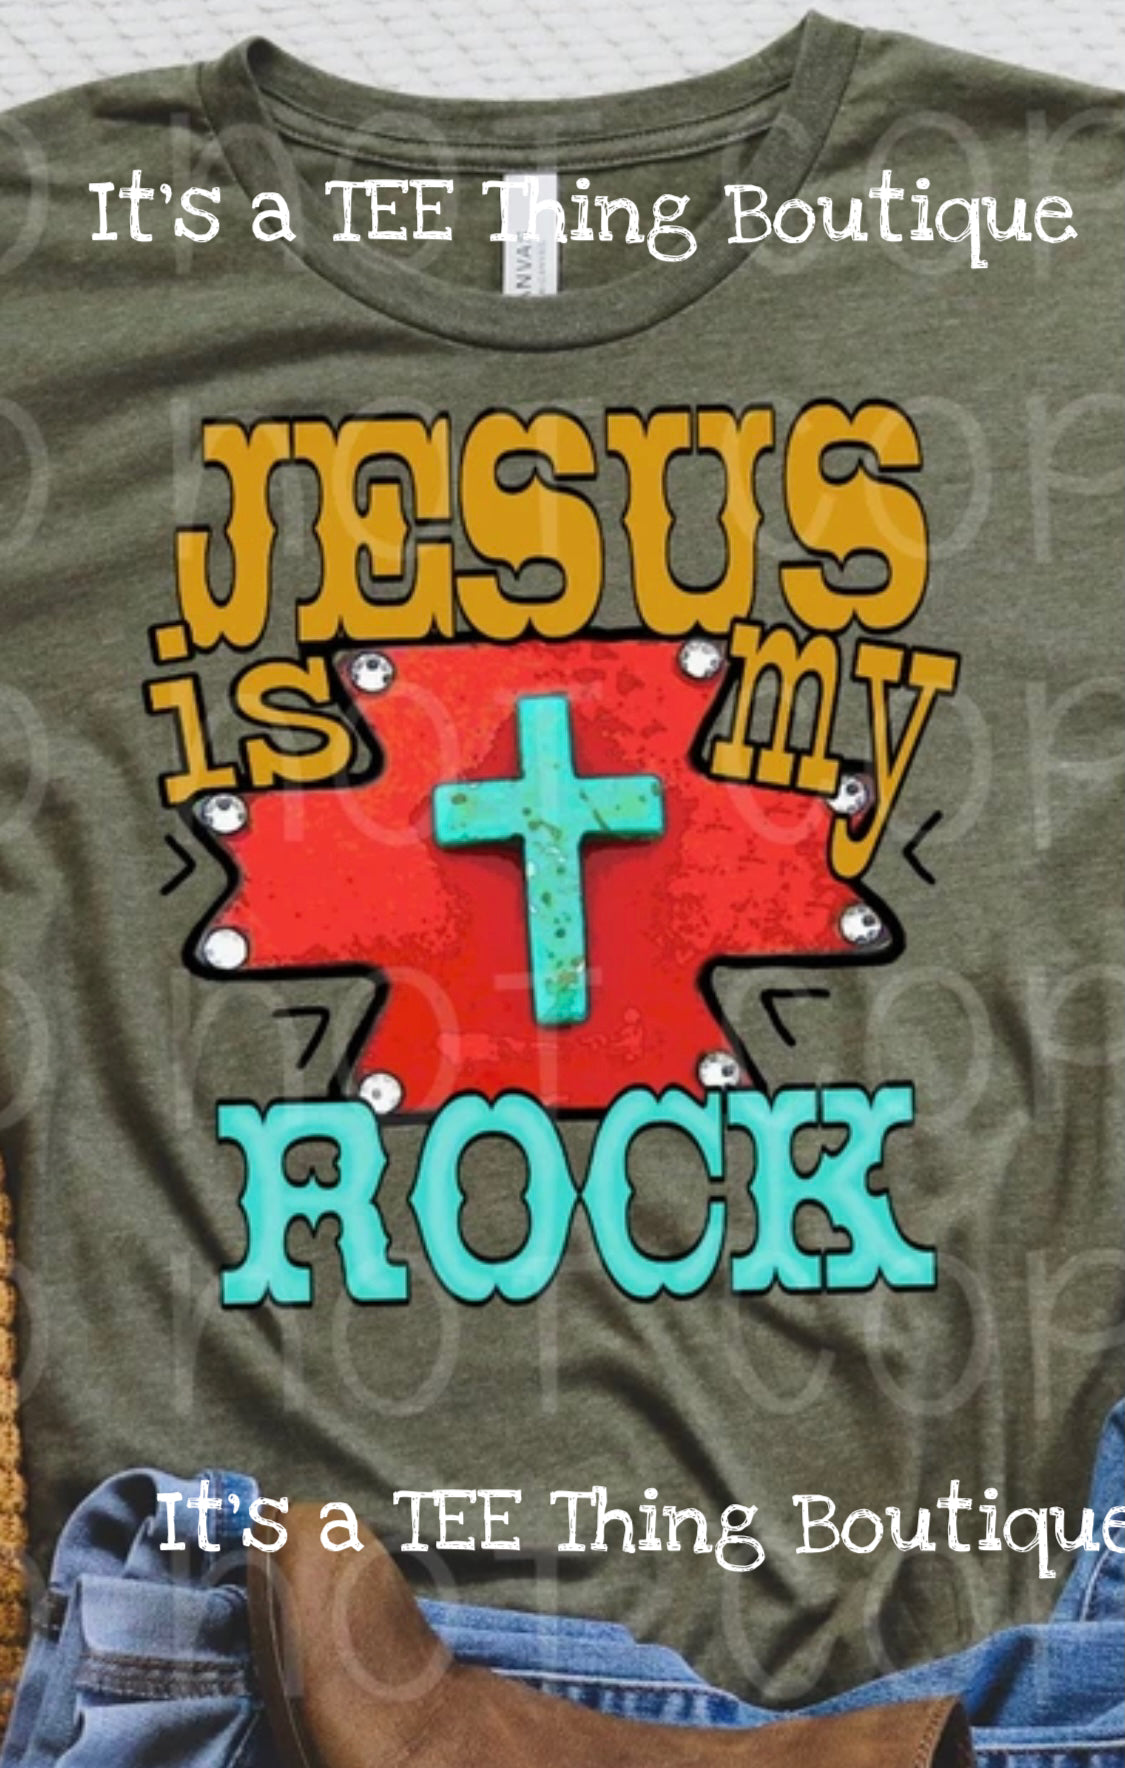 Jesus is my Rock